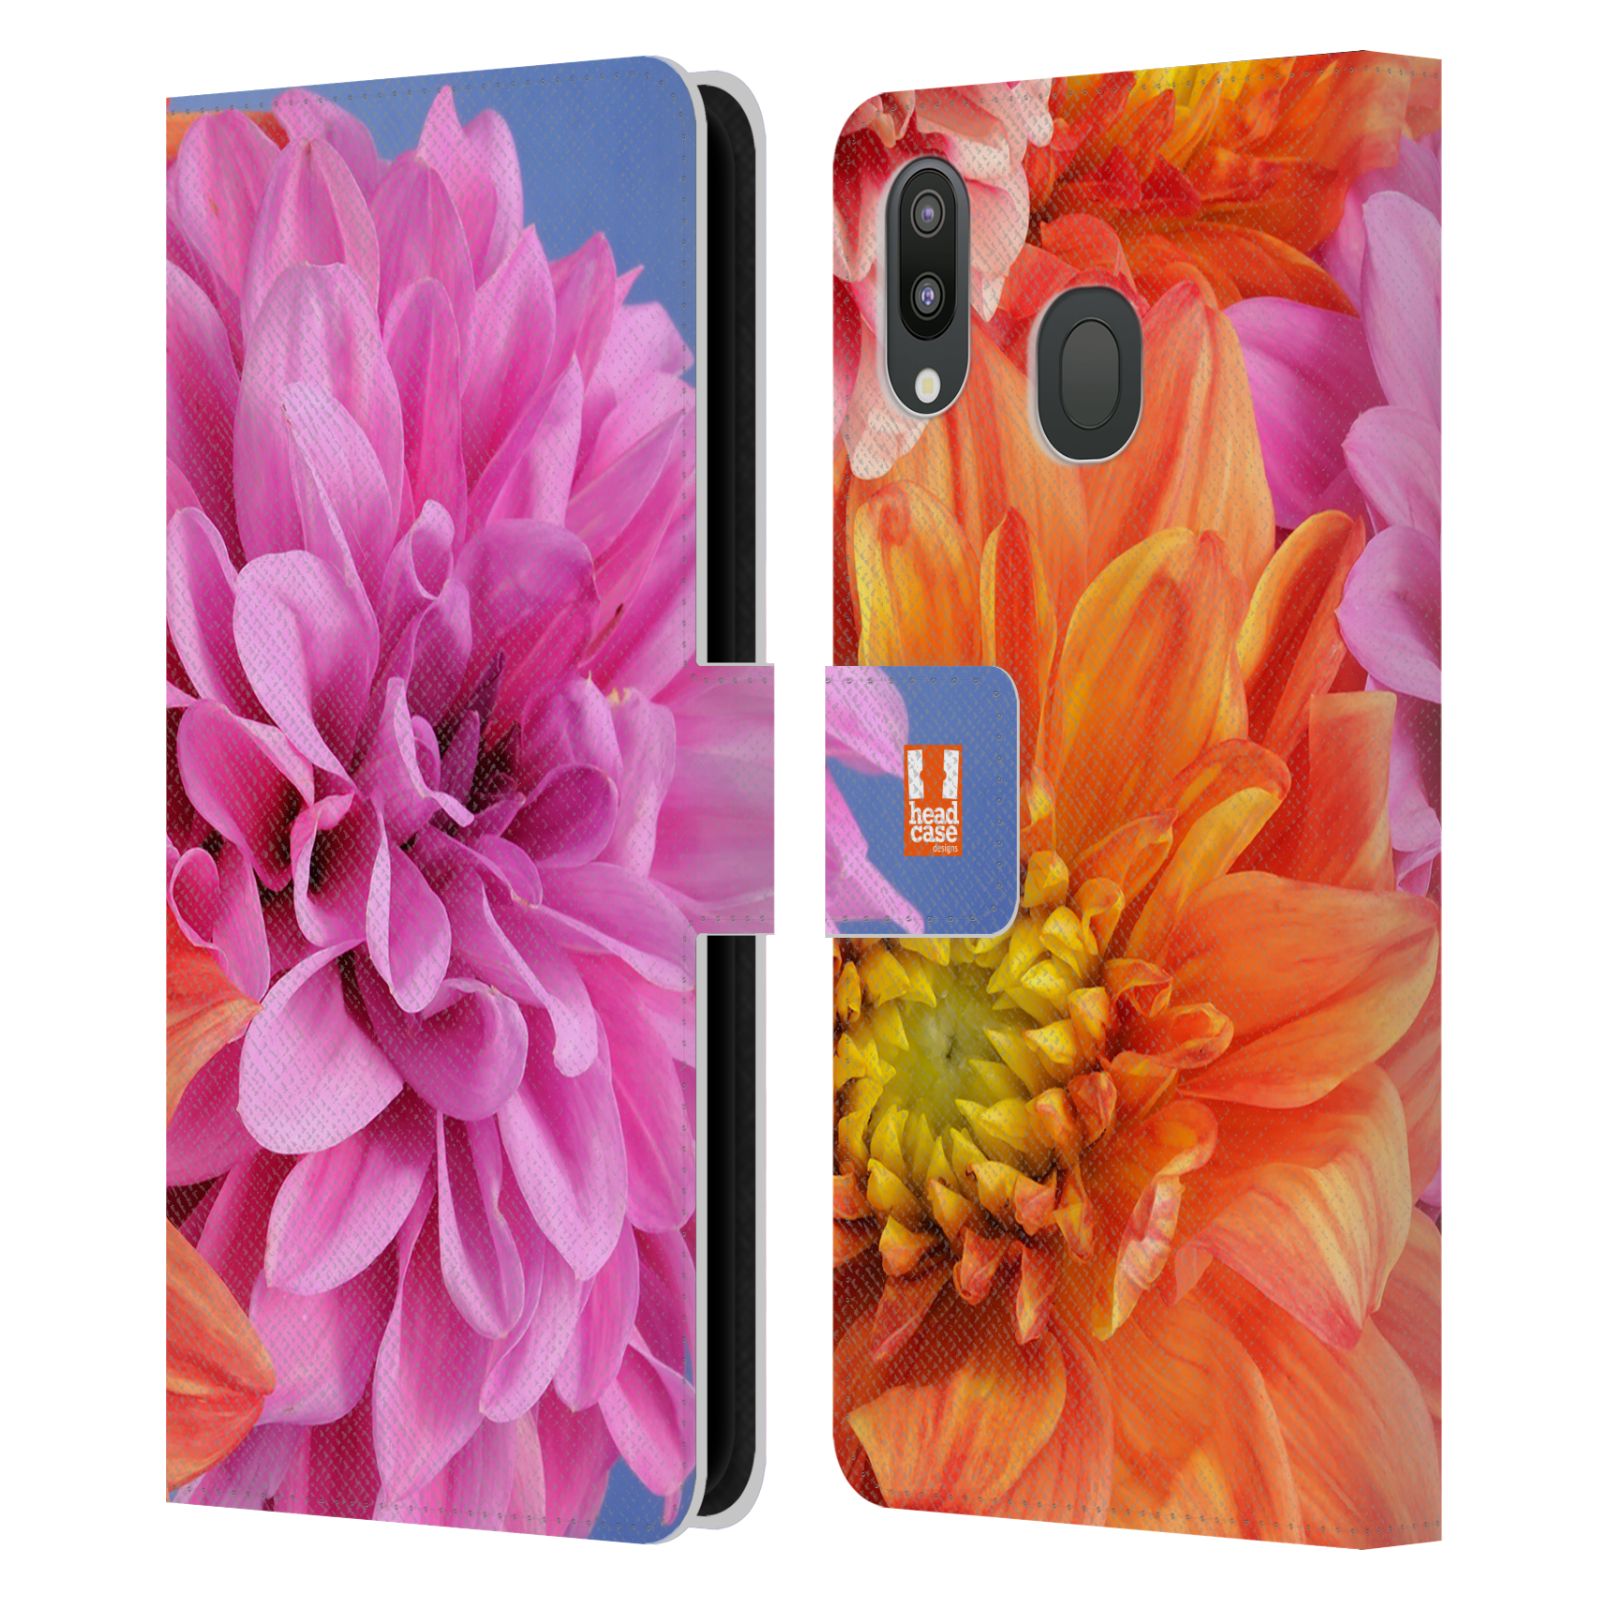 Pouzdro na mobil Samsung Galaxy M20 květy foto Jiřinka růžová a oranžová